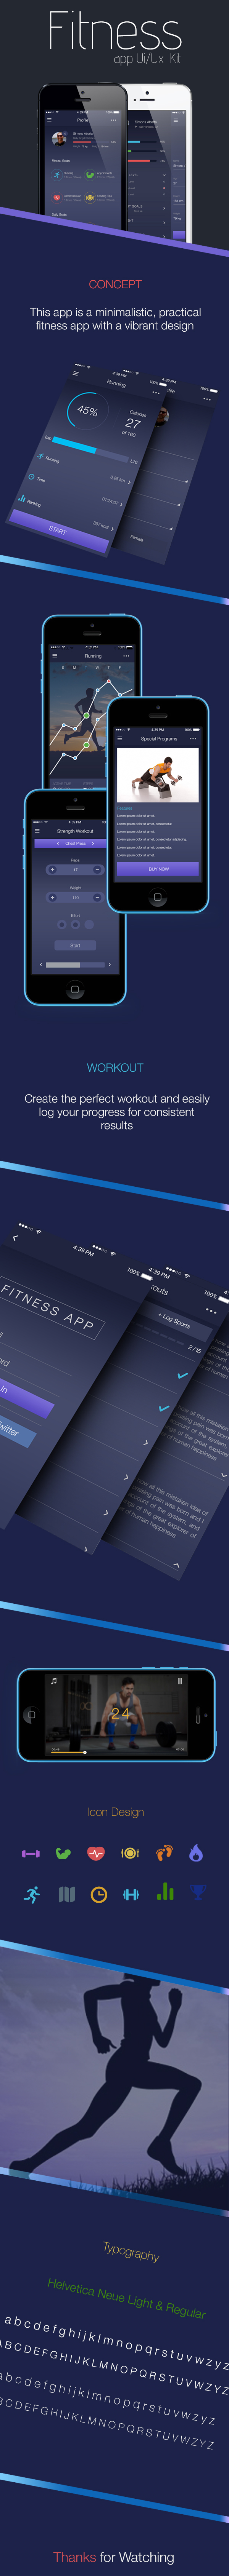 fitness app apple ardiovascular soccer sports design flat kit ios ios7 ios8 iphone